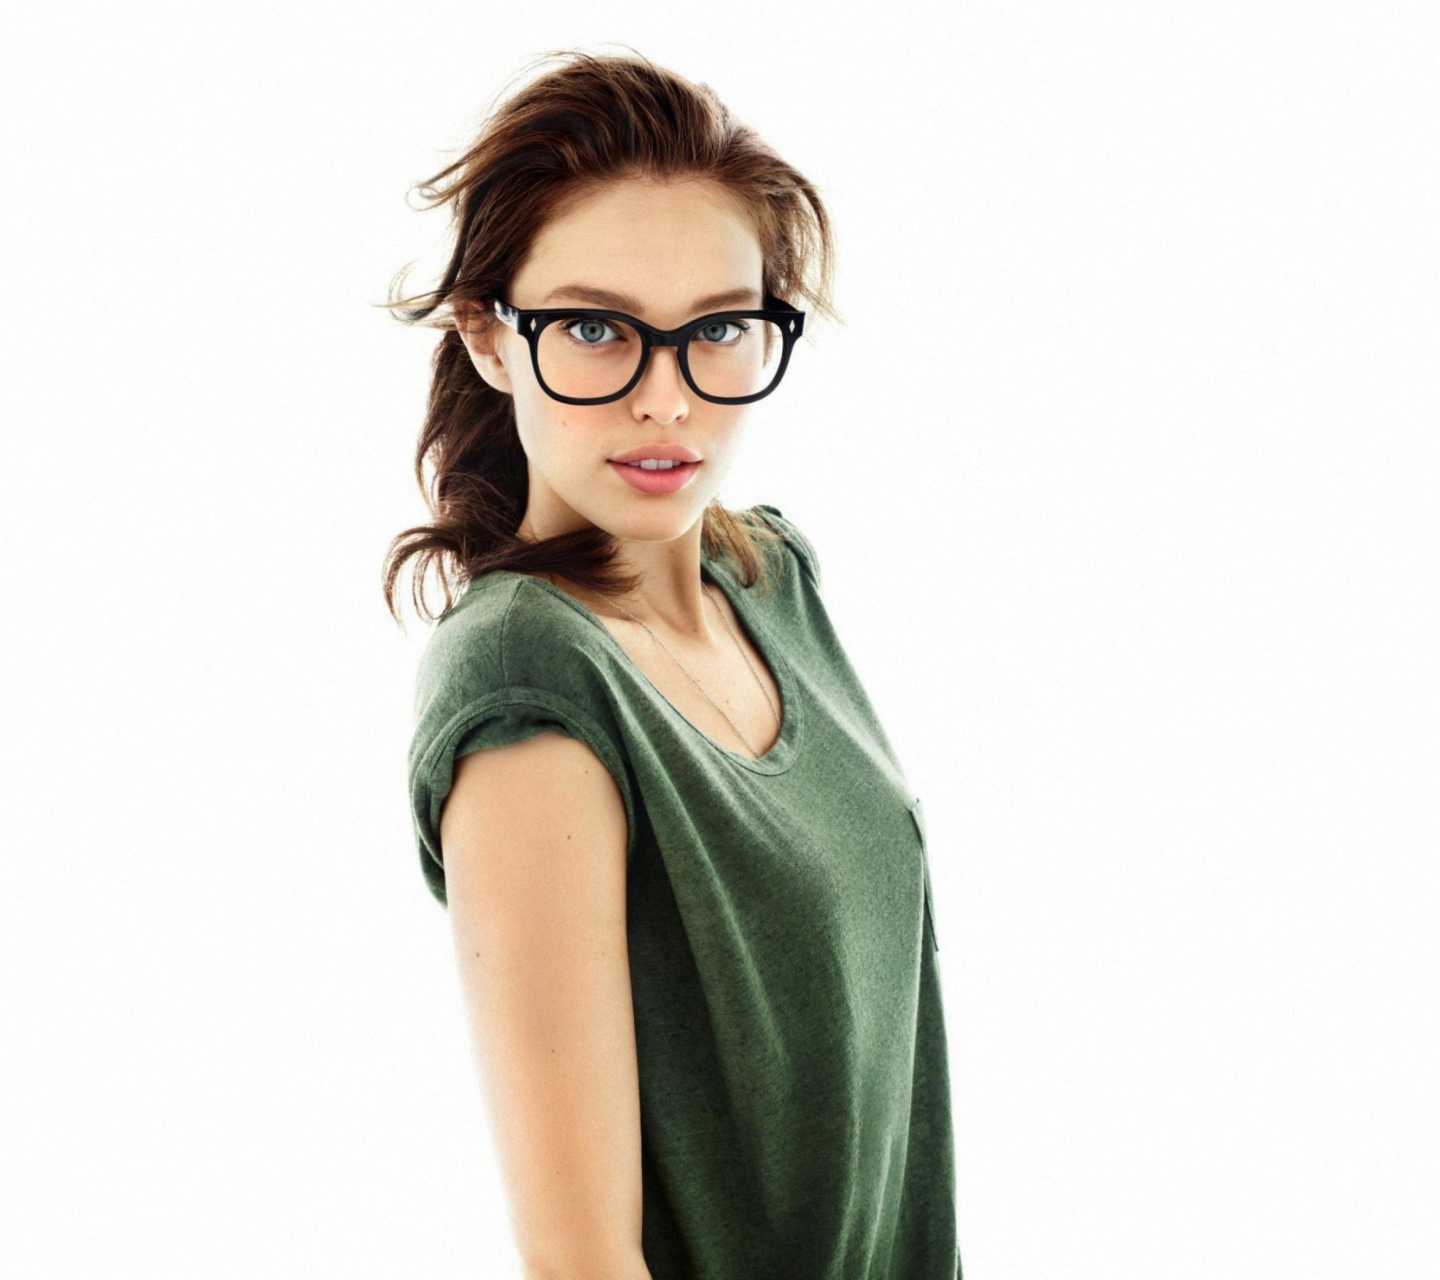 Very Cute Girl In Big Glasses screenshot #1 1440x1280